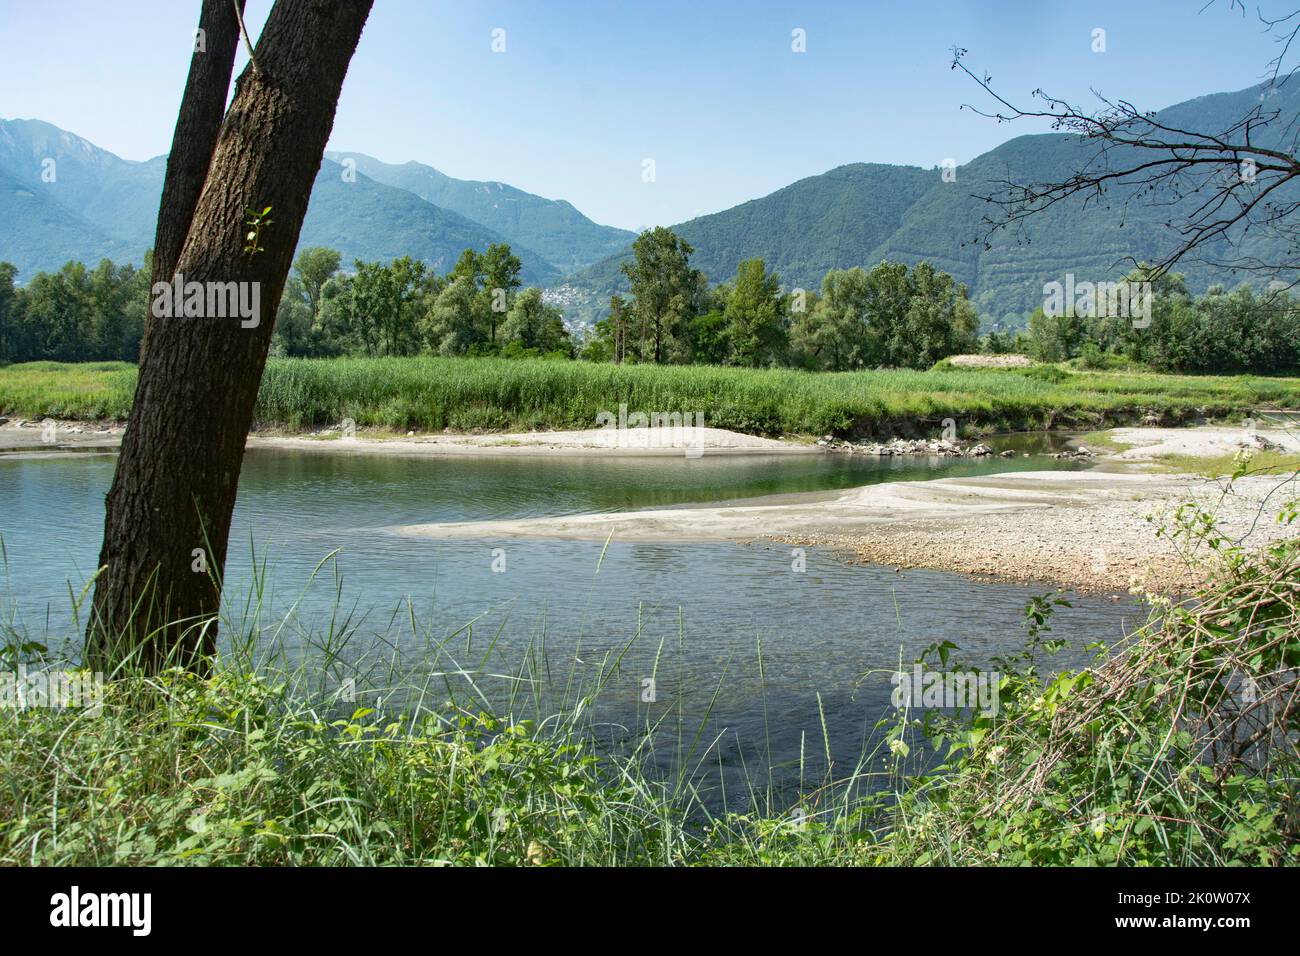 Bolle di Magadino: Die Mündung des Ticino in den Lago Maggiore Foto de stock